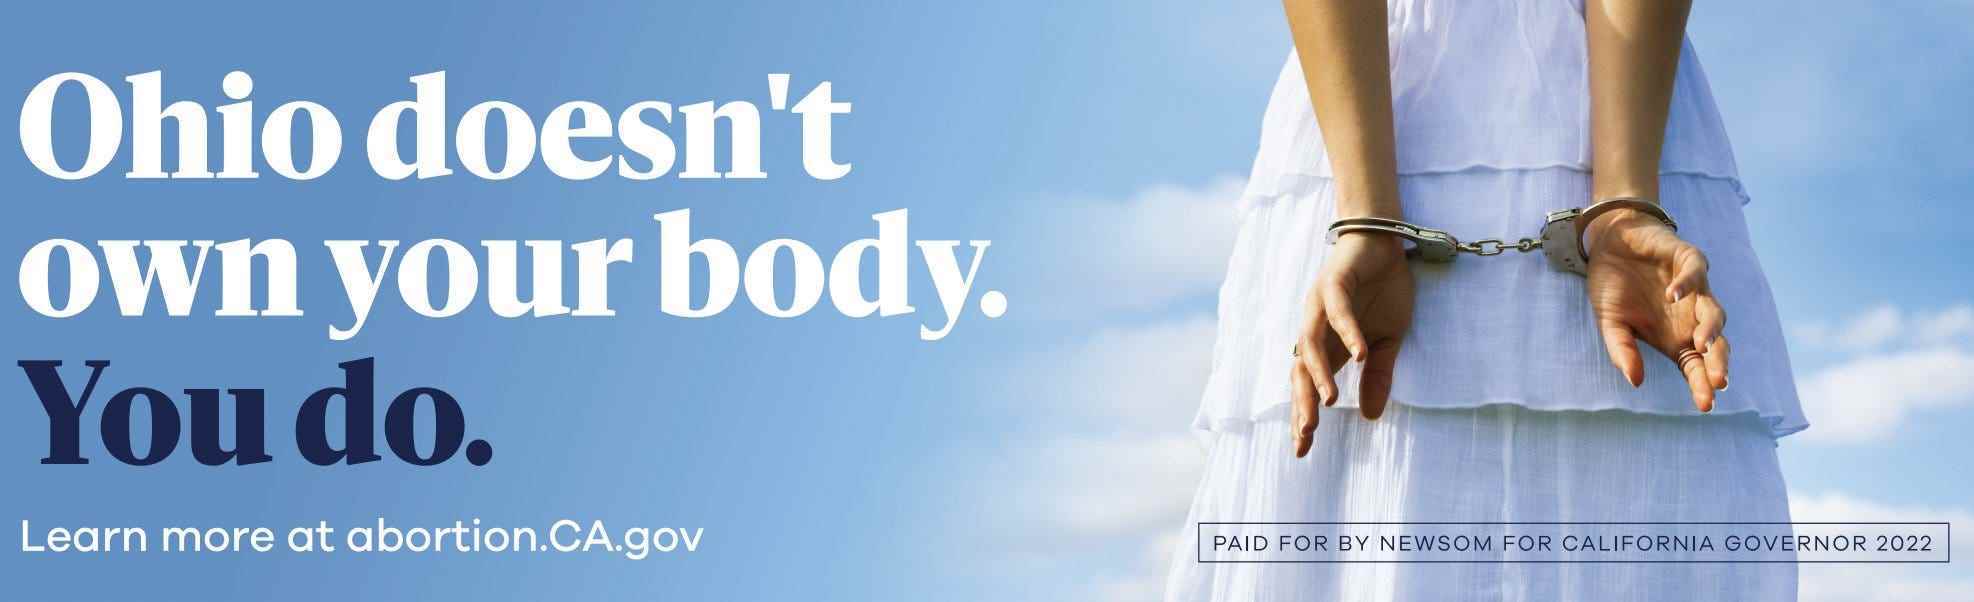 Gouverneur Gavin Newsom startete eine Pro-Choice-Plakatkampagne in Anti-Abtreibungsstaaten mit restriktiven Gesetzen.